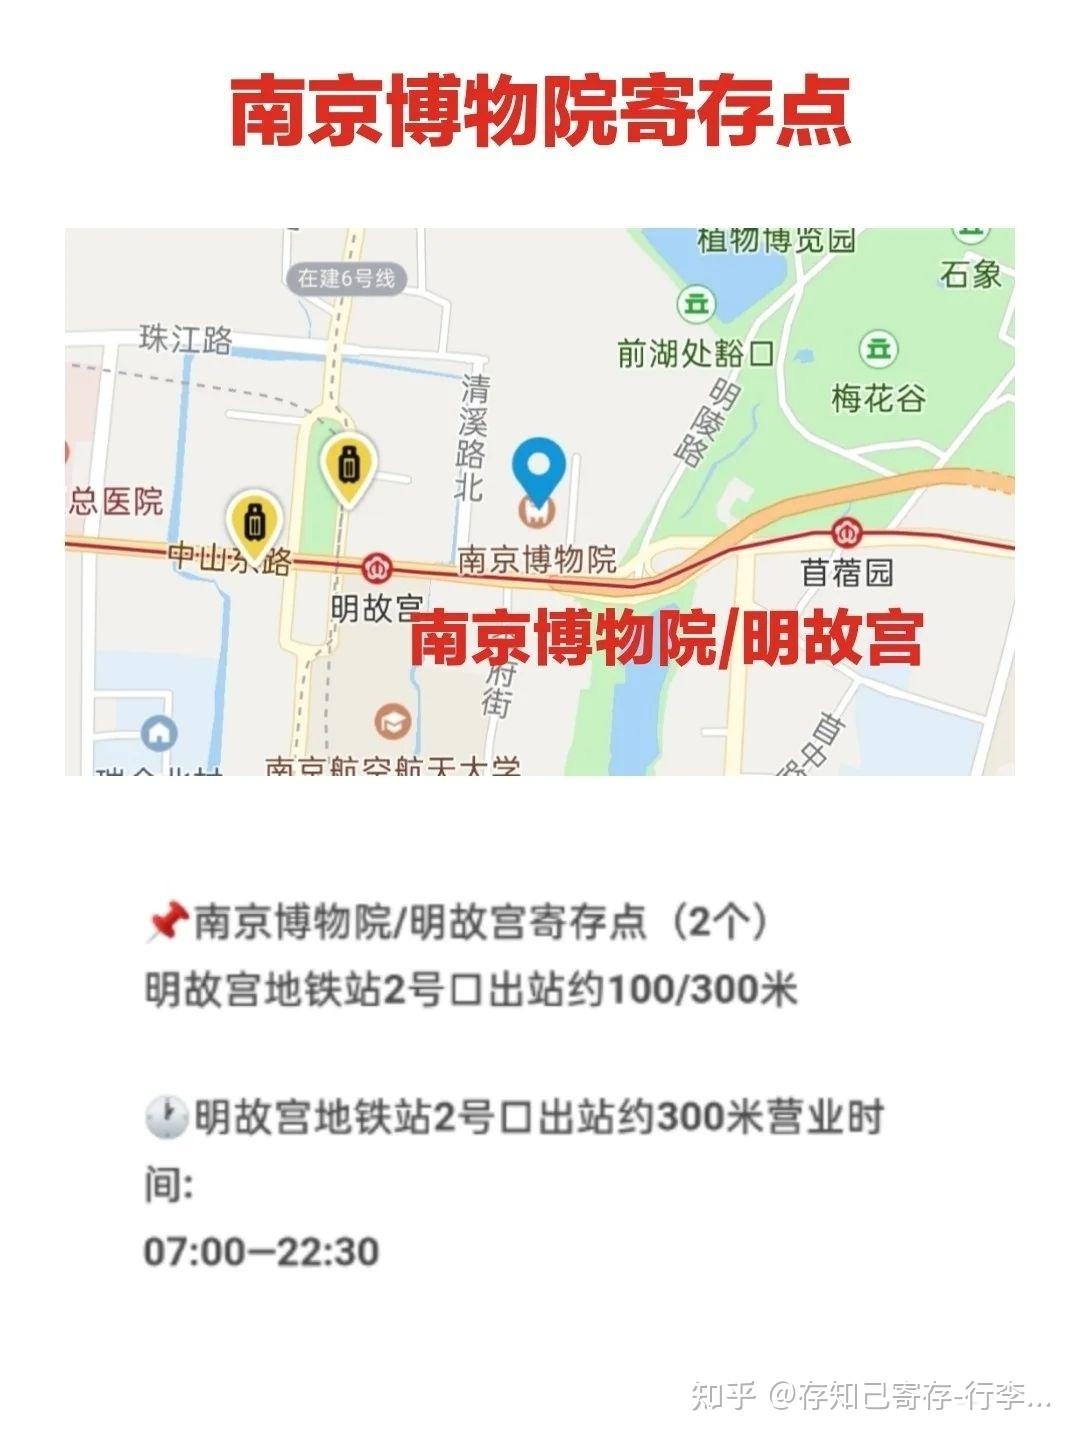 南京旅游/南京博物院游览美食盖章及行李寄存攻略